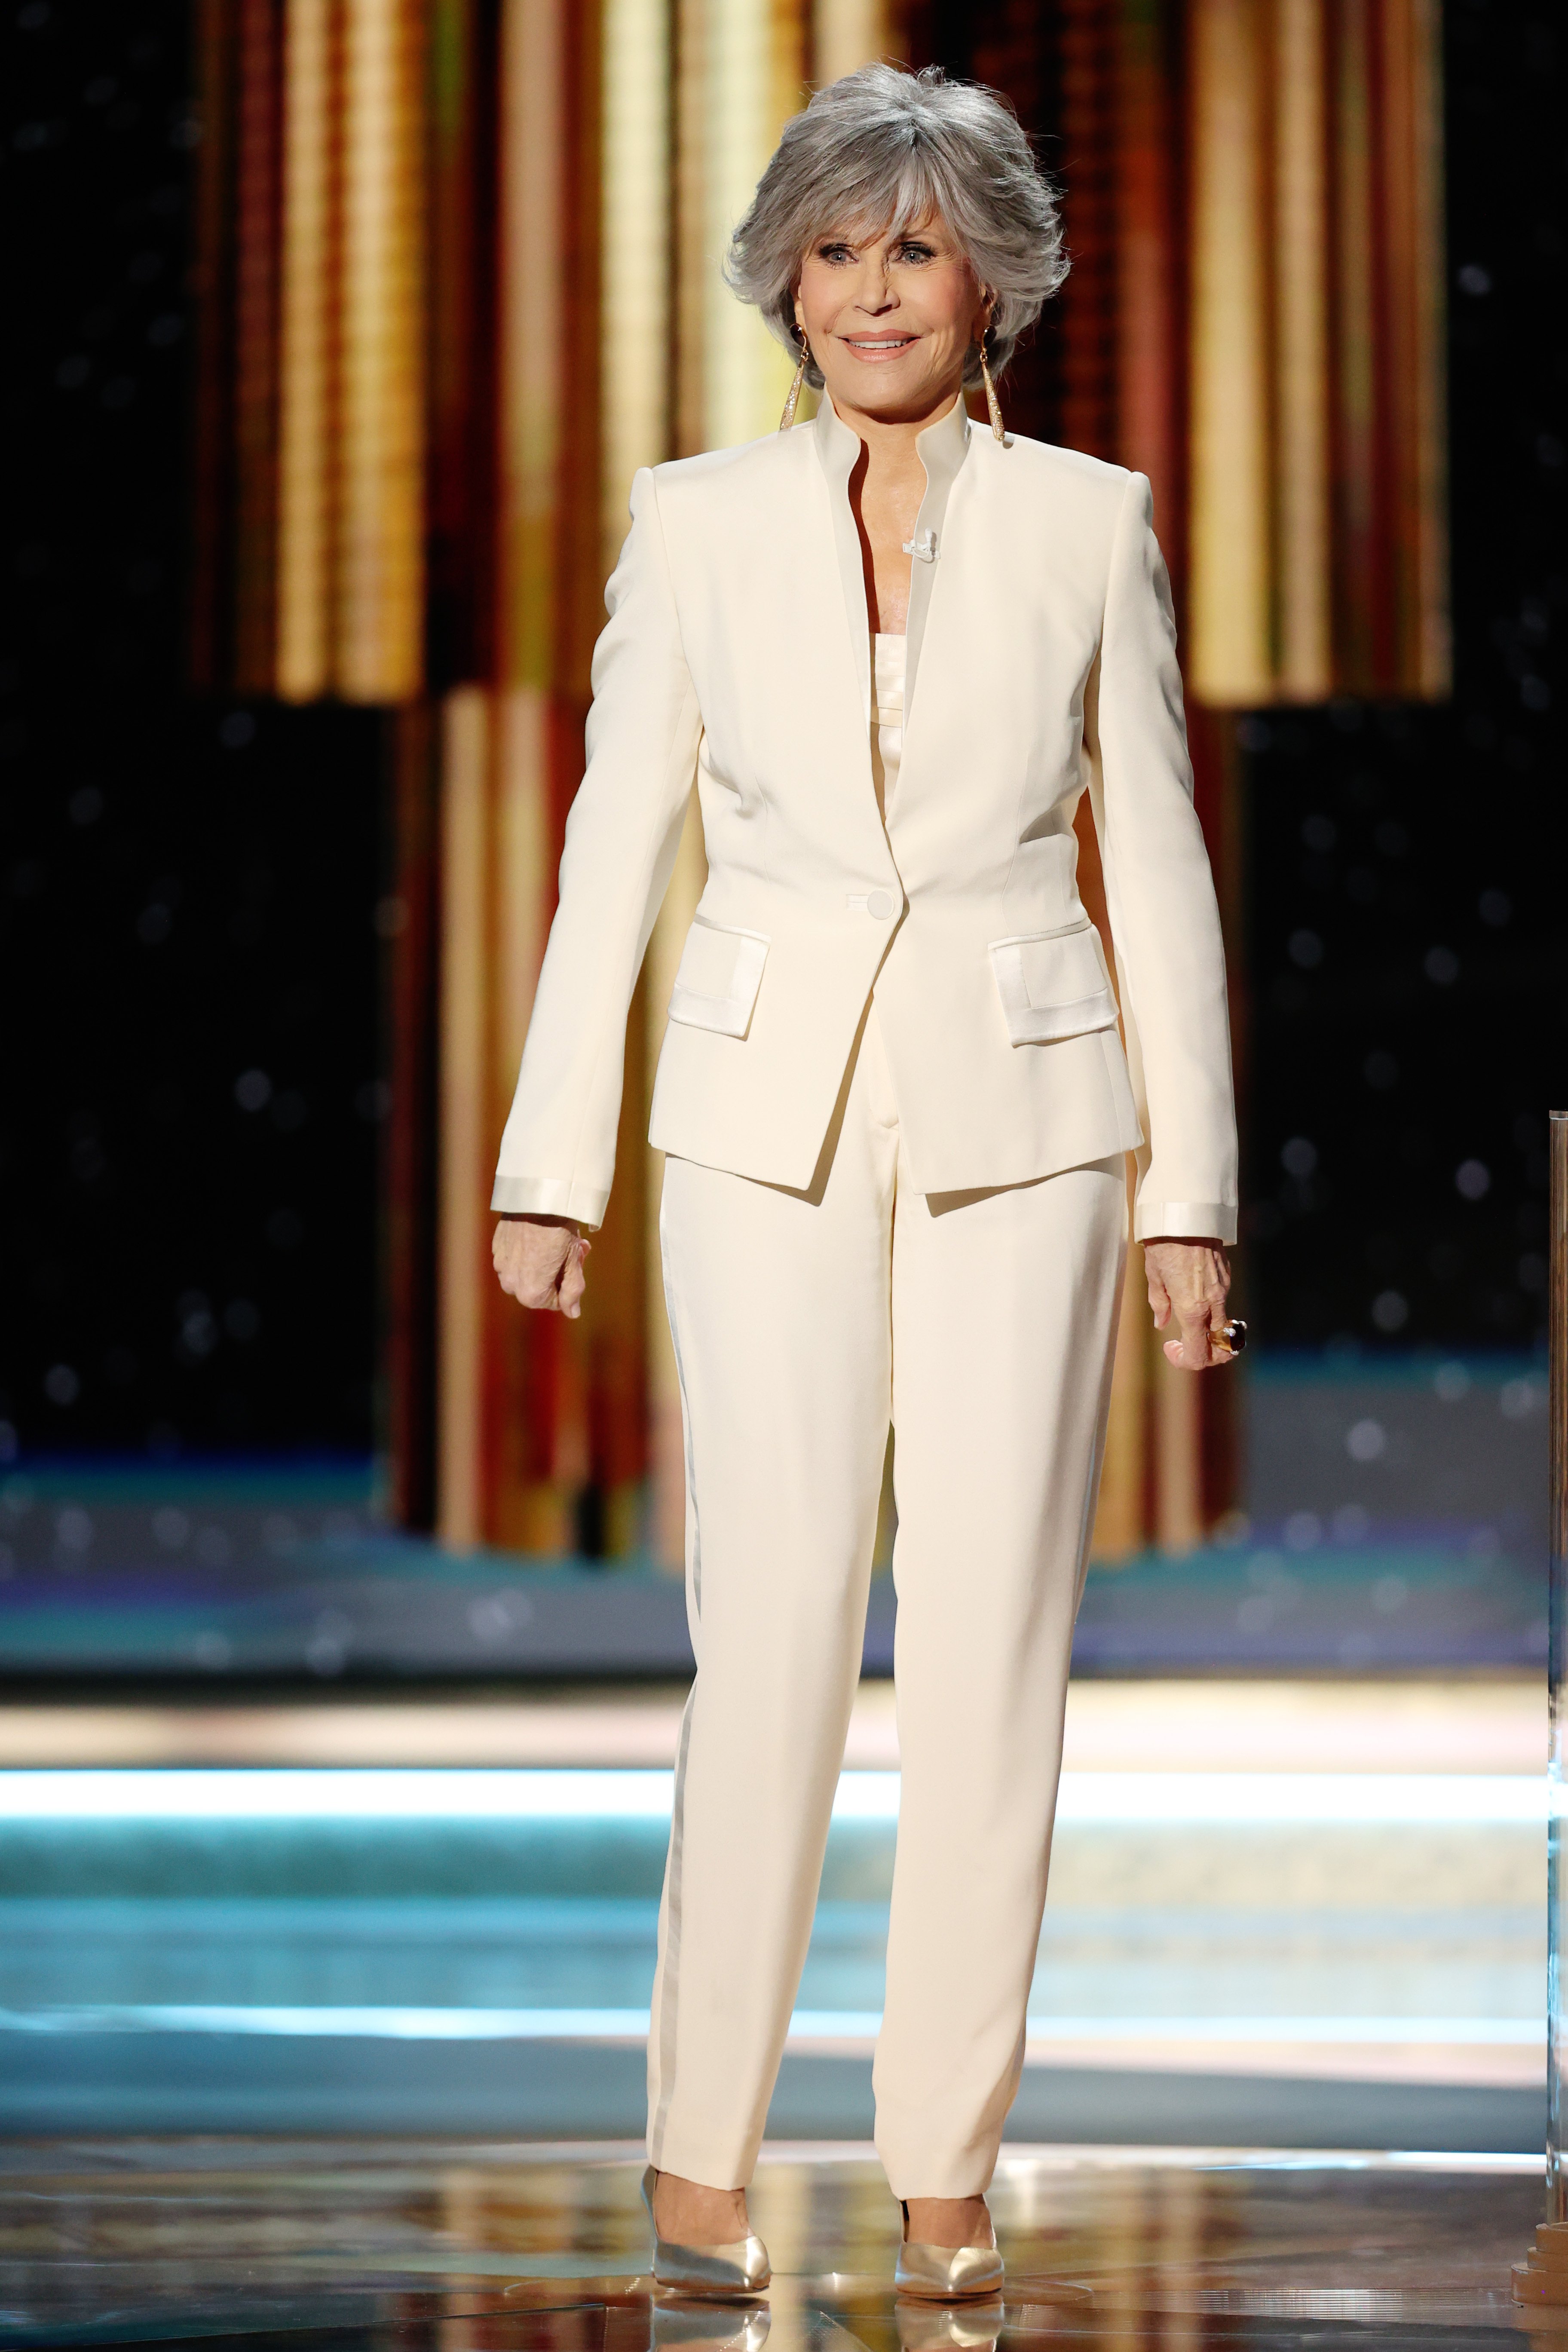 Jane Fonda recibiendo el Premio Cecil B. DeMille en la 78ª Entrega Anual de los Globos de Oro, el 1 de marzo de 2021. | Foto: Getty Images